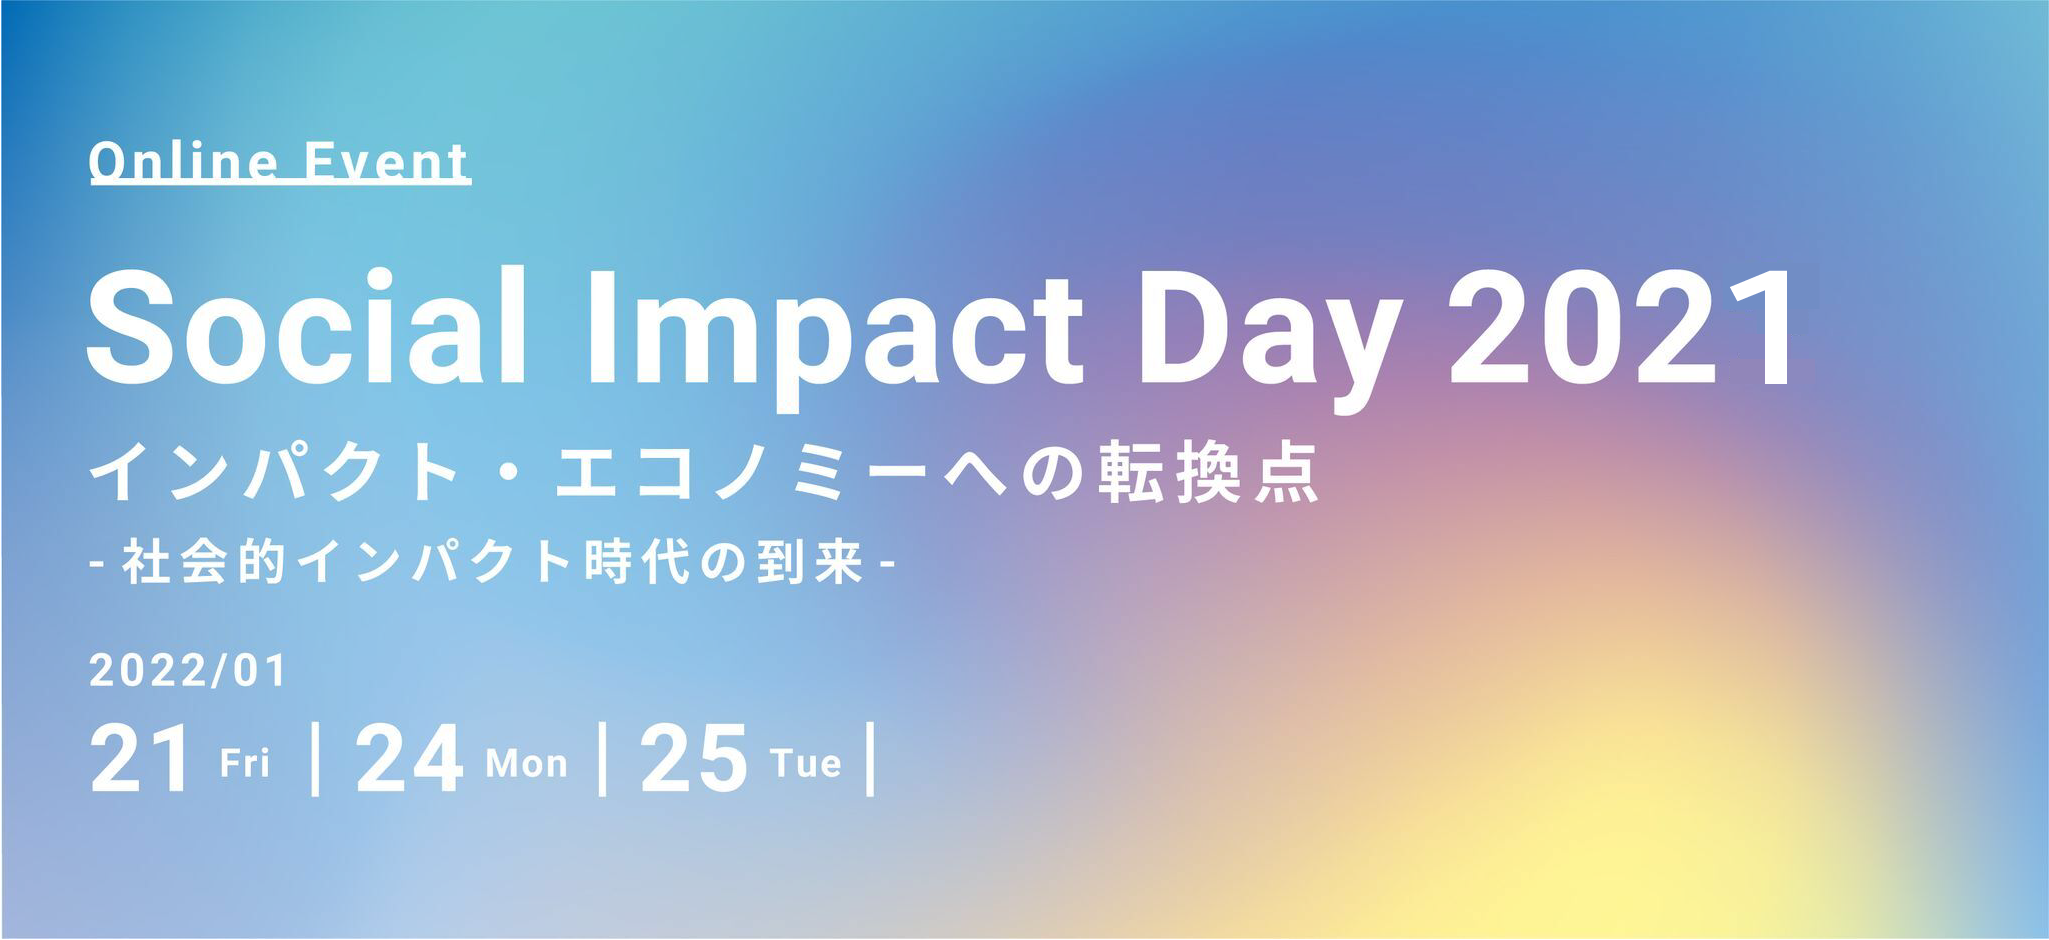 早割期間1/17まで!Social Impact Day2021参加申し込み受付中